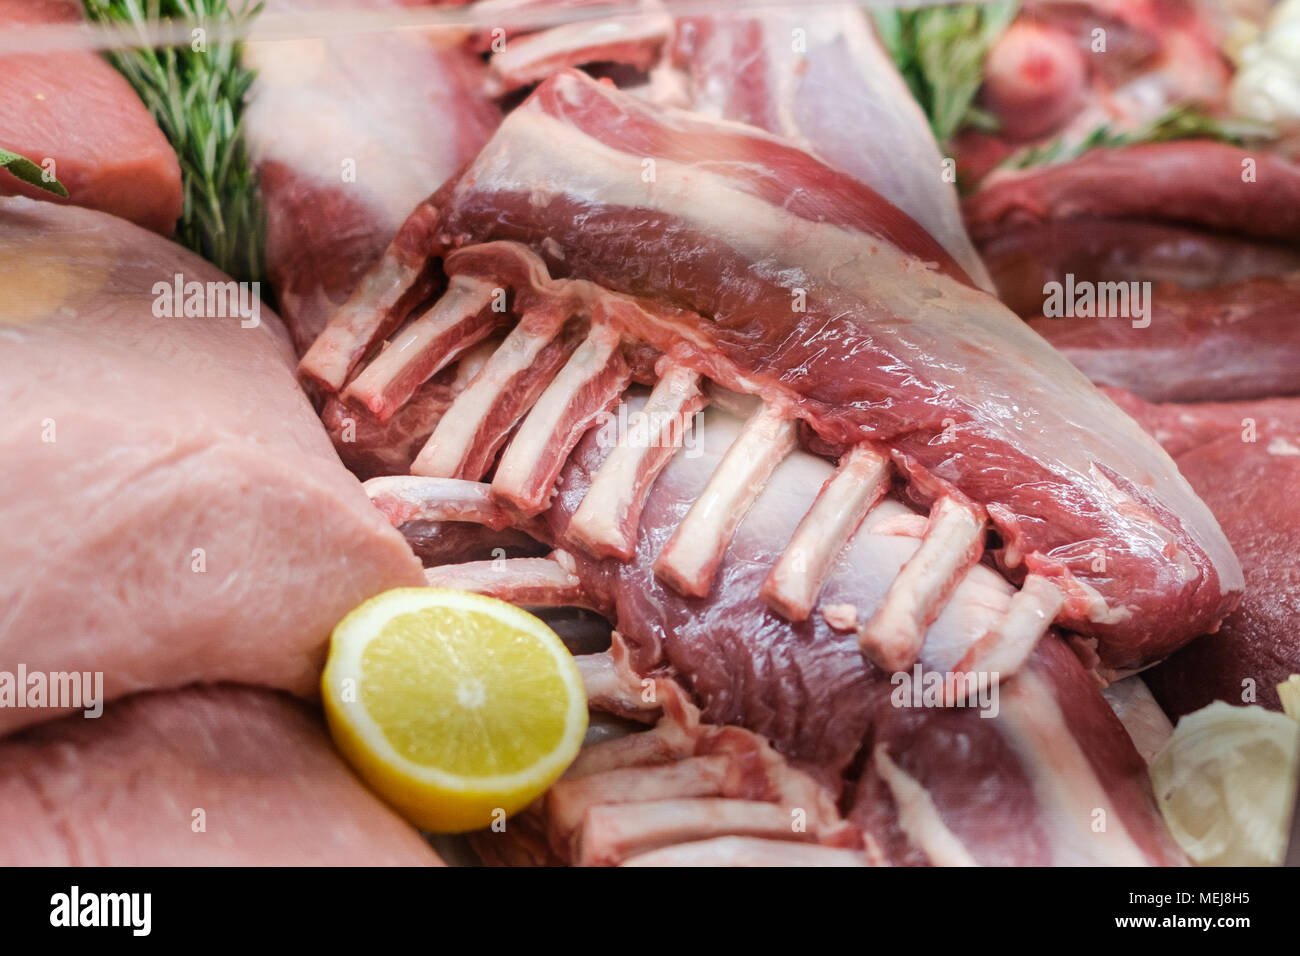 La viande crue et des côtes libre au marché de l'alimentation - boucherie Banque D'Images